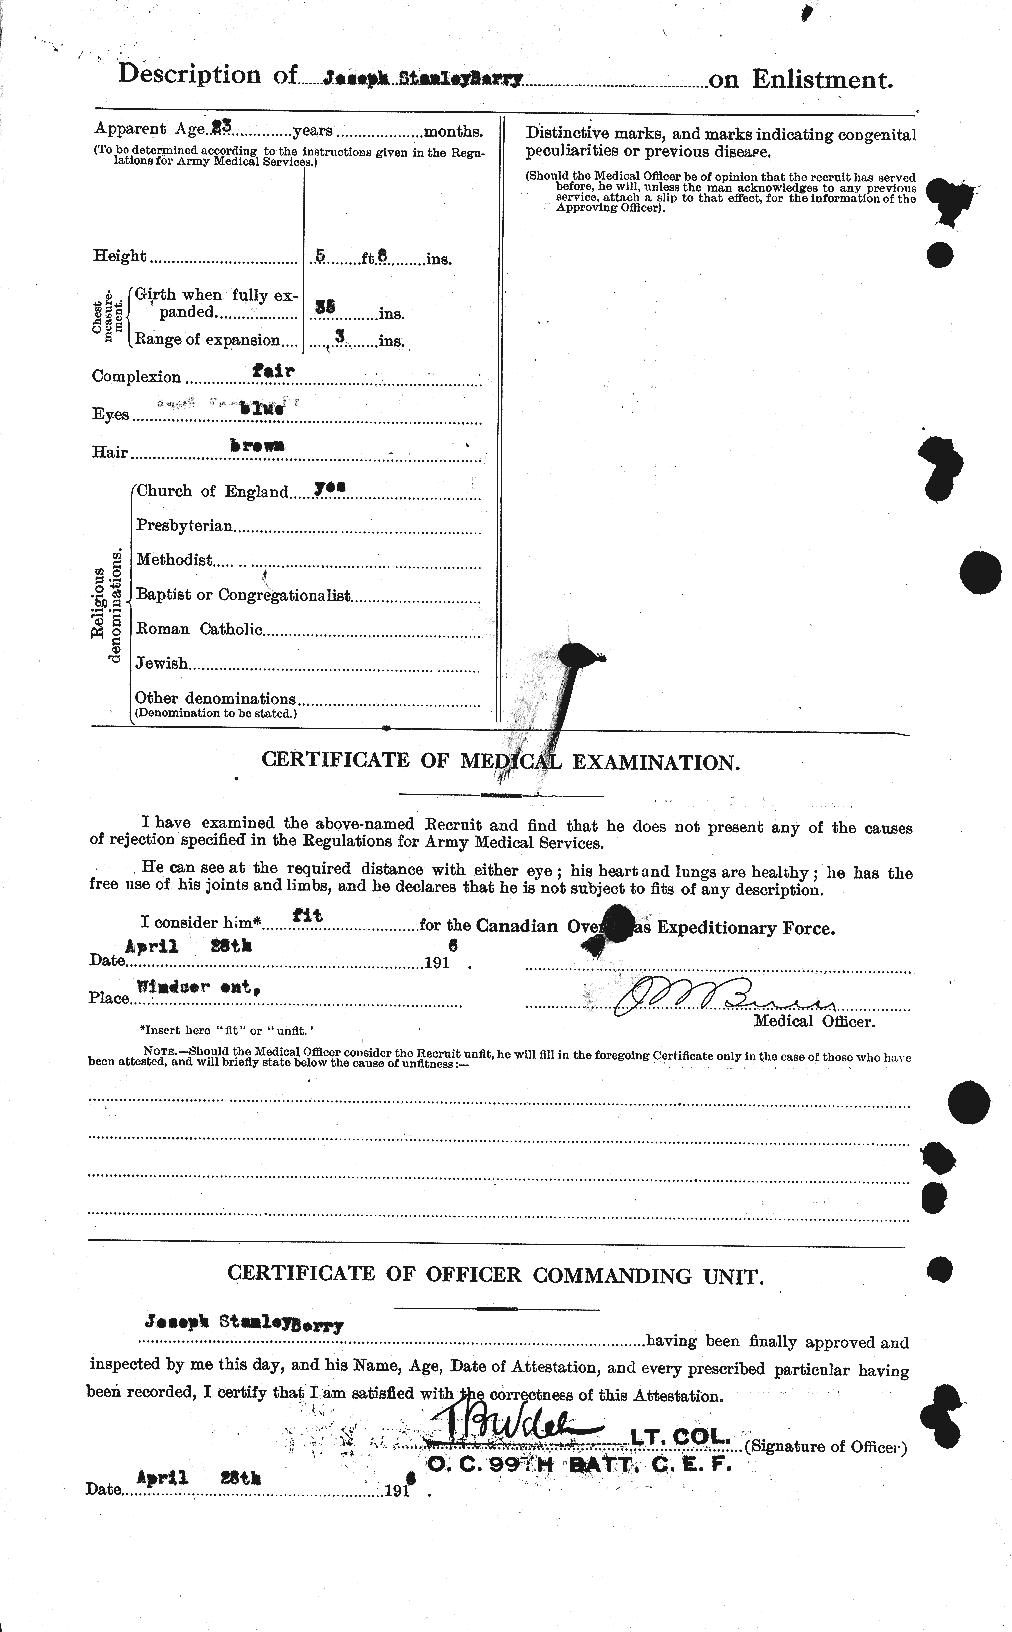 Dossiers du Personnel de la Première Guerre mondiale - CEC 240994b